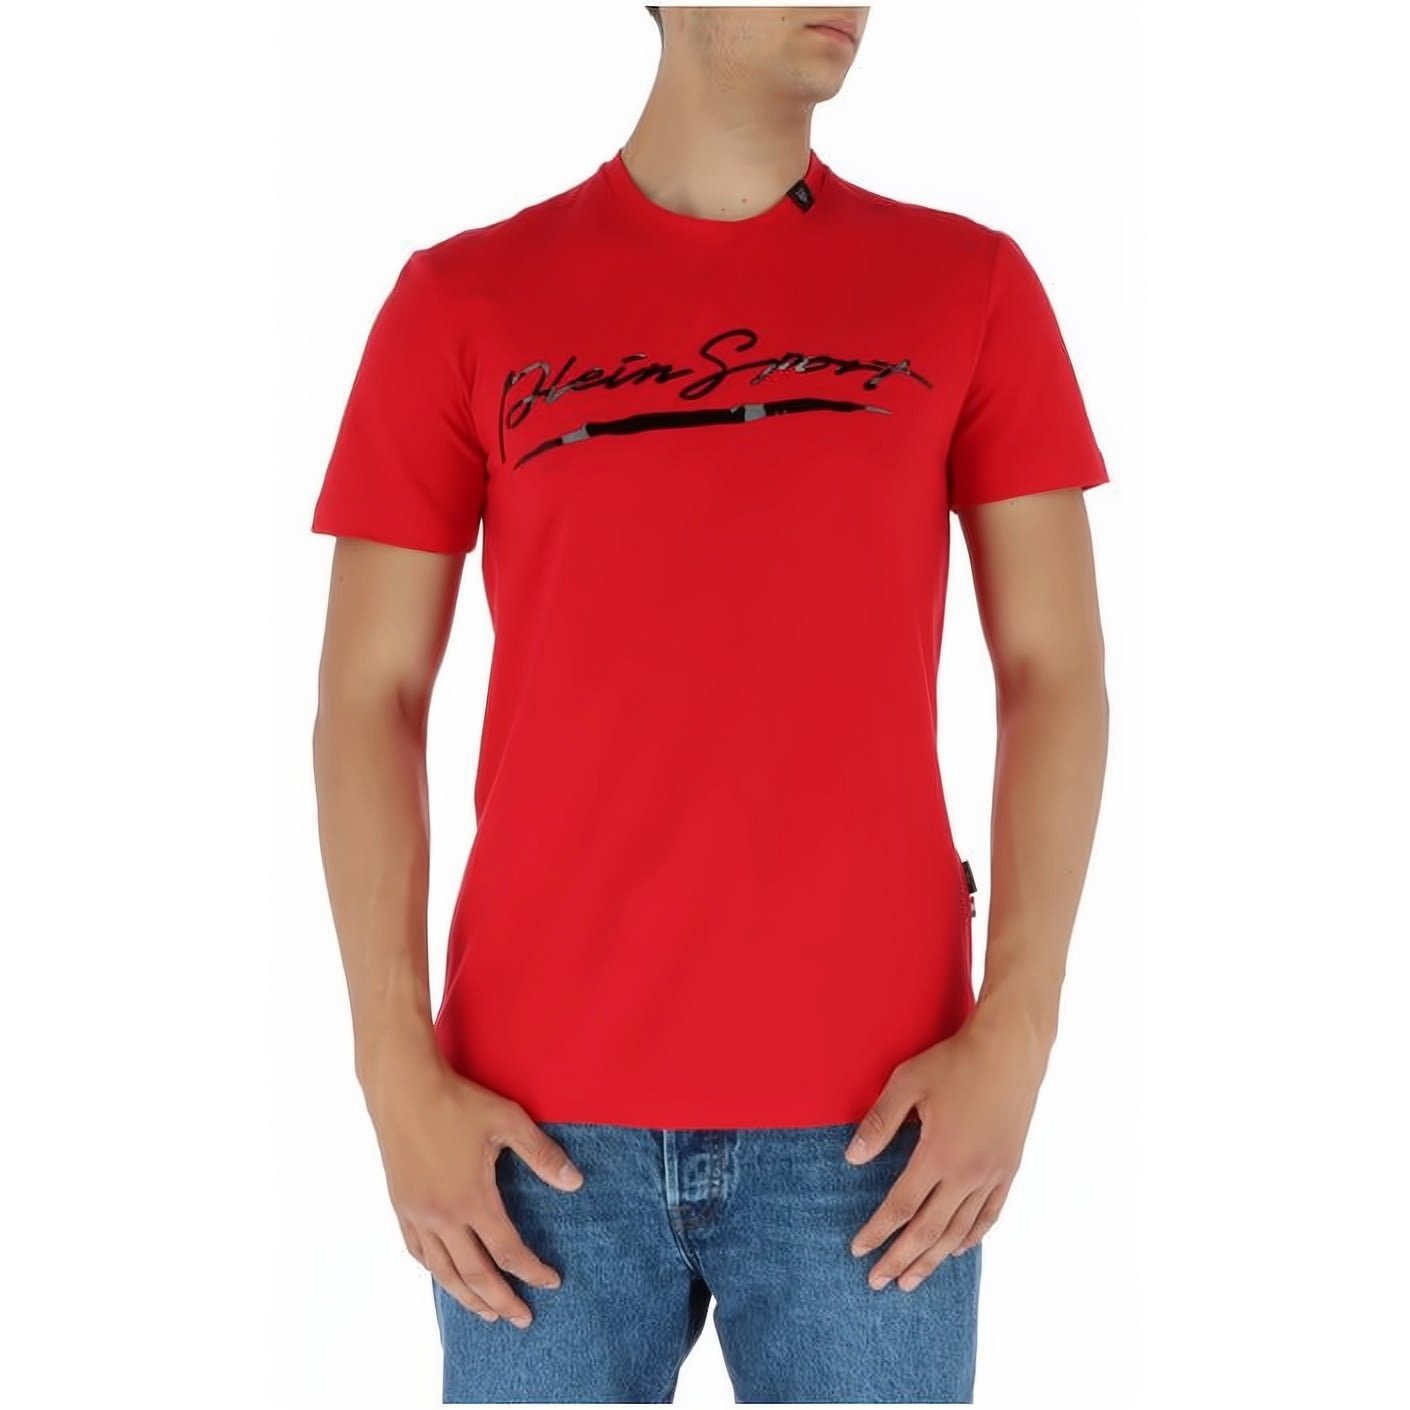 Tragekomfort, Farbauswahl vielfältige NECK T-Shirt SPORT ROUND Look, hoher Stylischer PLEIN